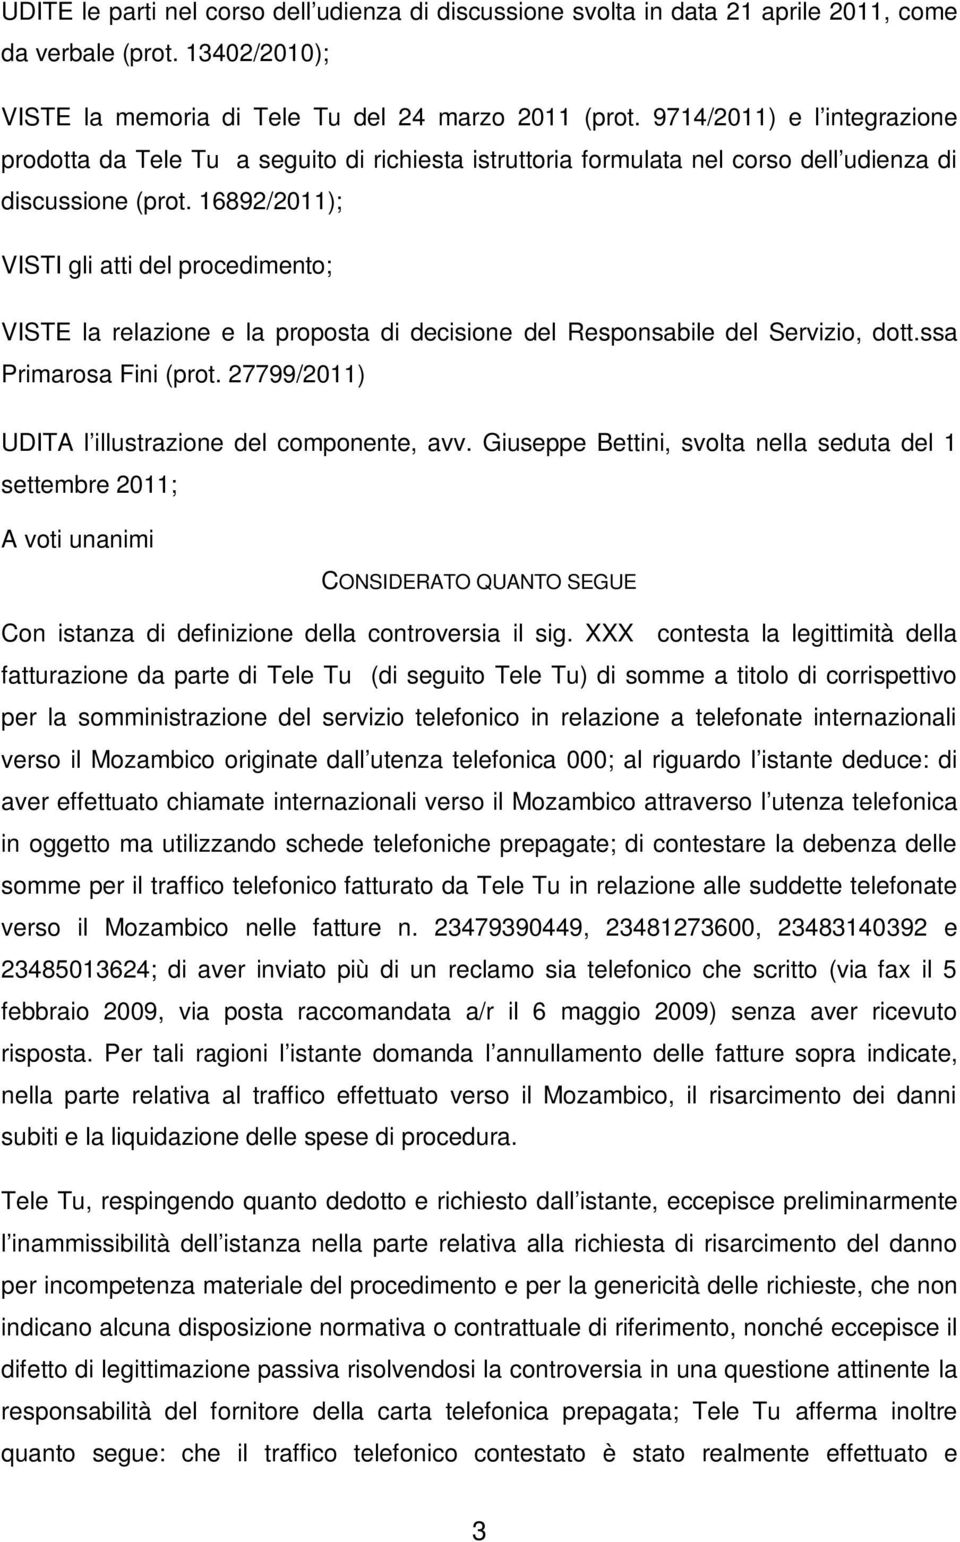 16892/2011); VISTI gli atti del procedimento; VISTE la relazione e la proposta di decisione del Responsabile del Servizio, dott.ssa Primarosa Fini (prot.